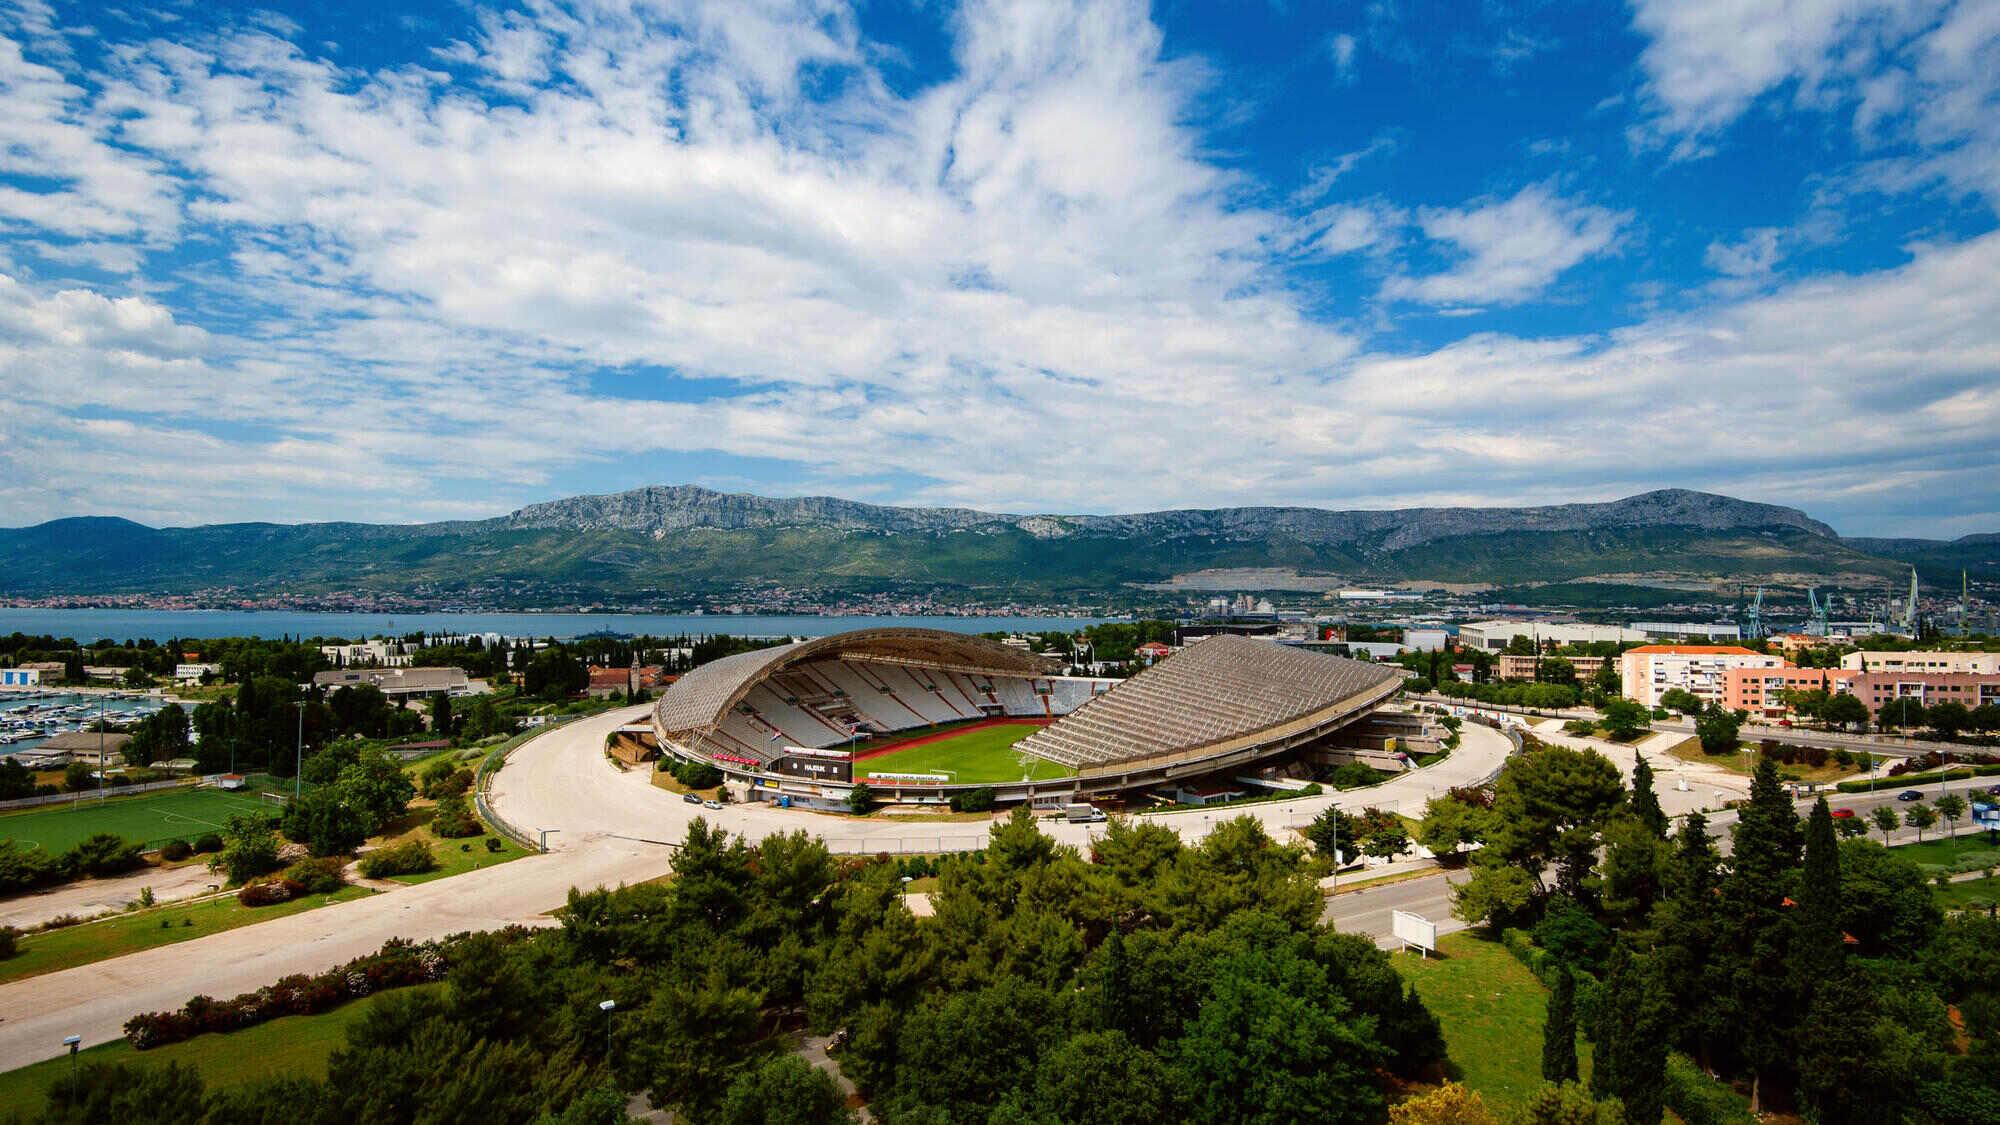 Poljud Stadium – Split – Croatia